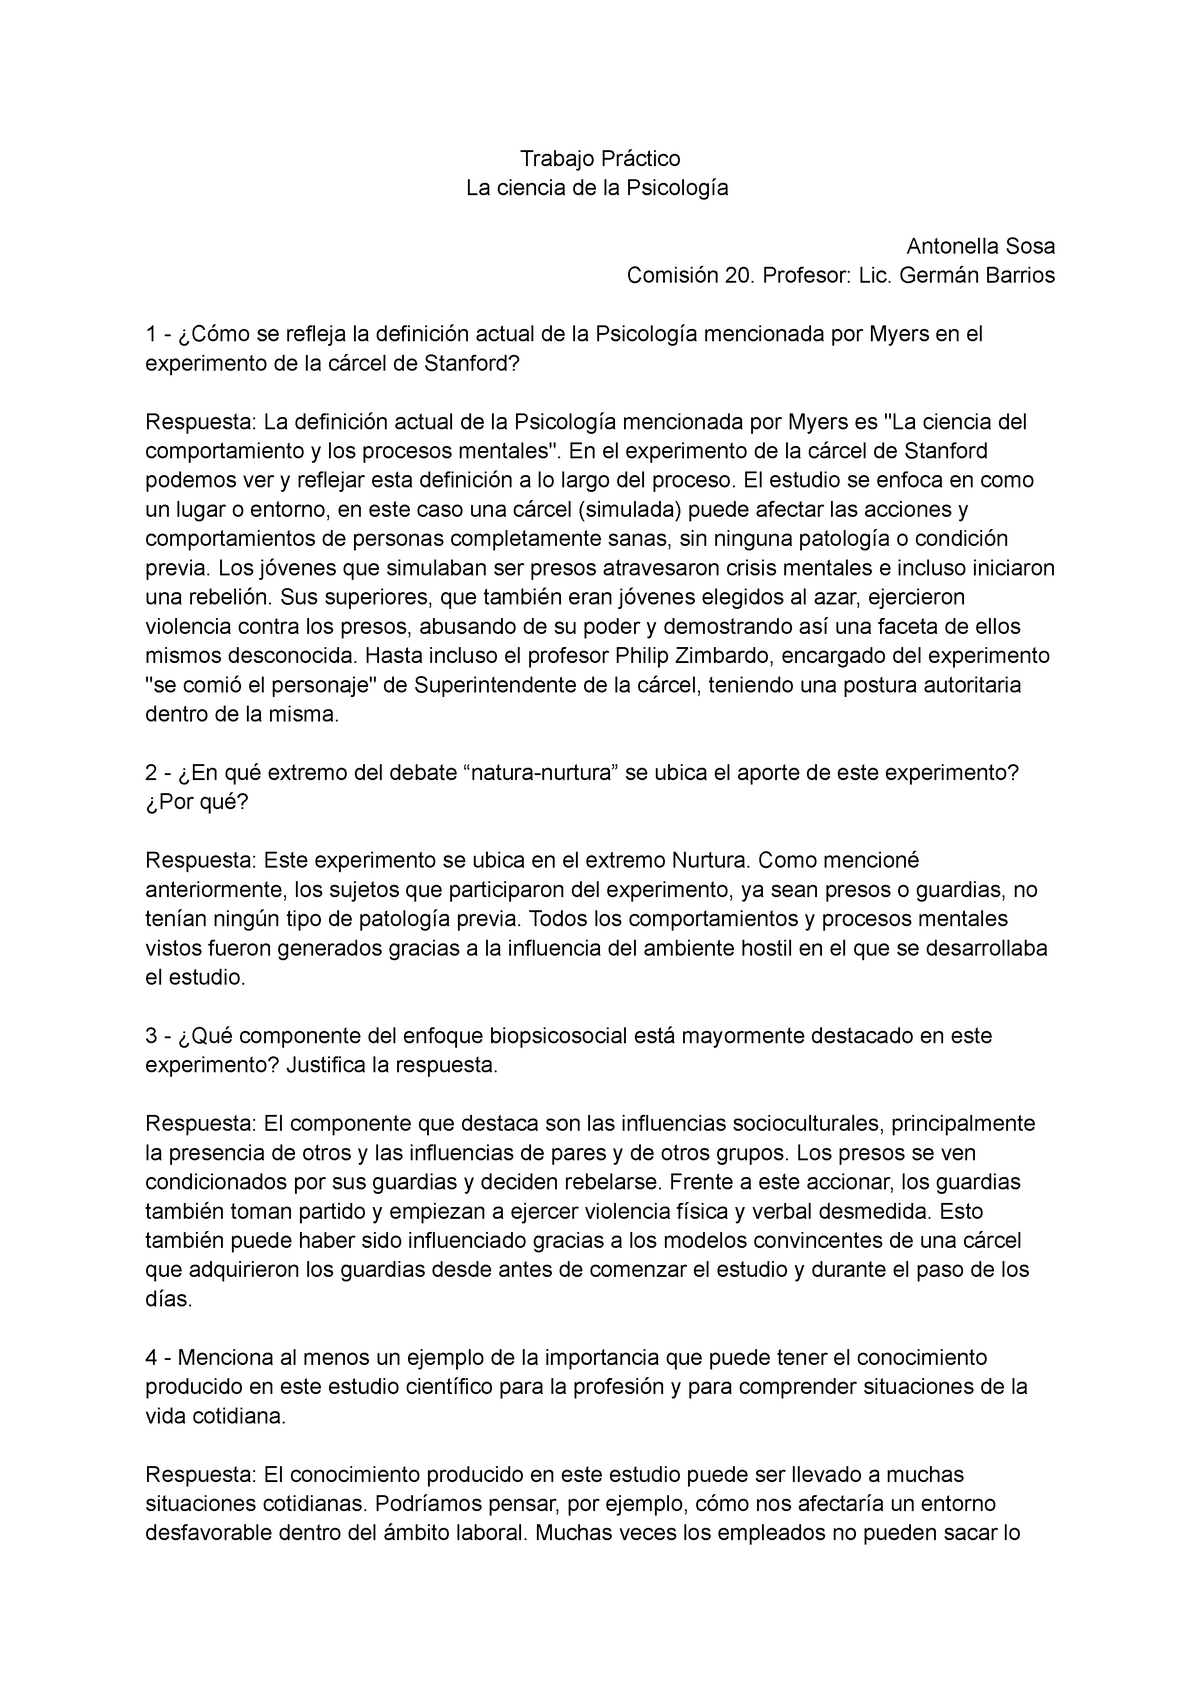 Trabajo Práctico - Trabajo Práctico La ciencia de la Psicología Antonella  Sosa Comisión 20. - Studocu